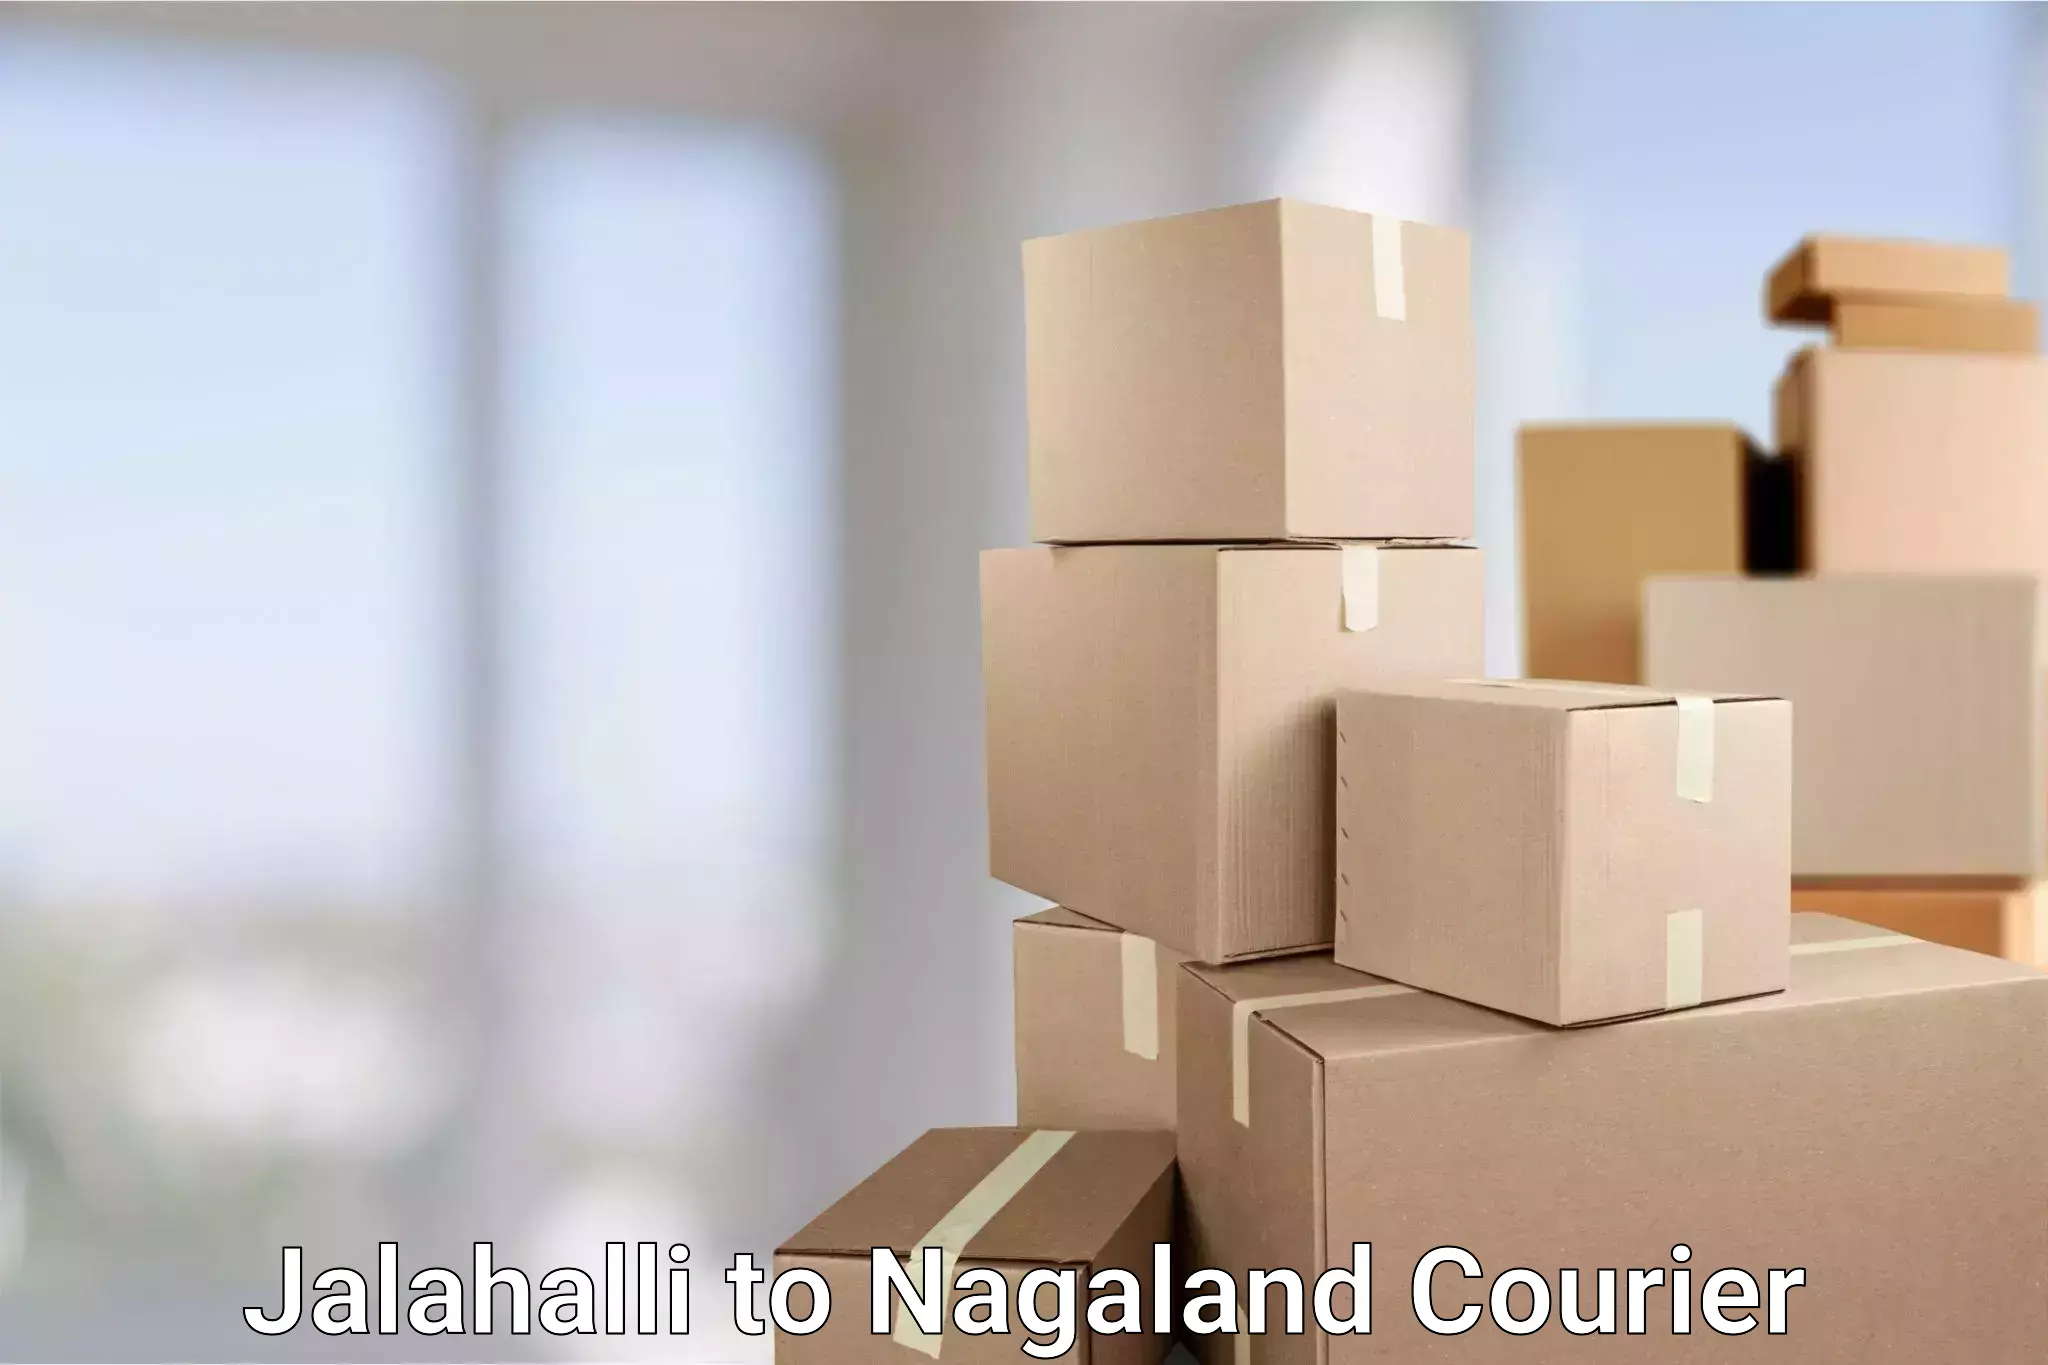 Global freight services Jalahalli to Nagaland